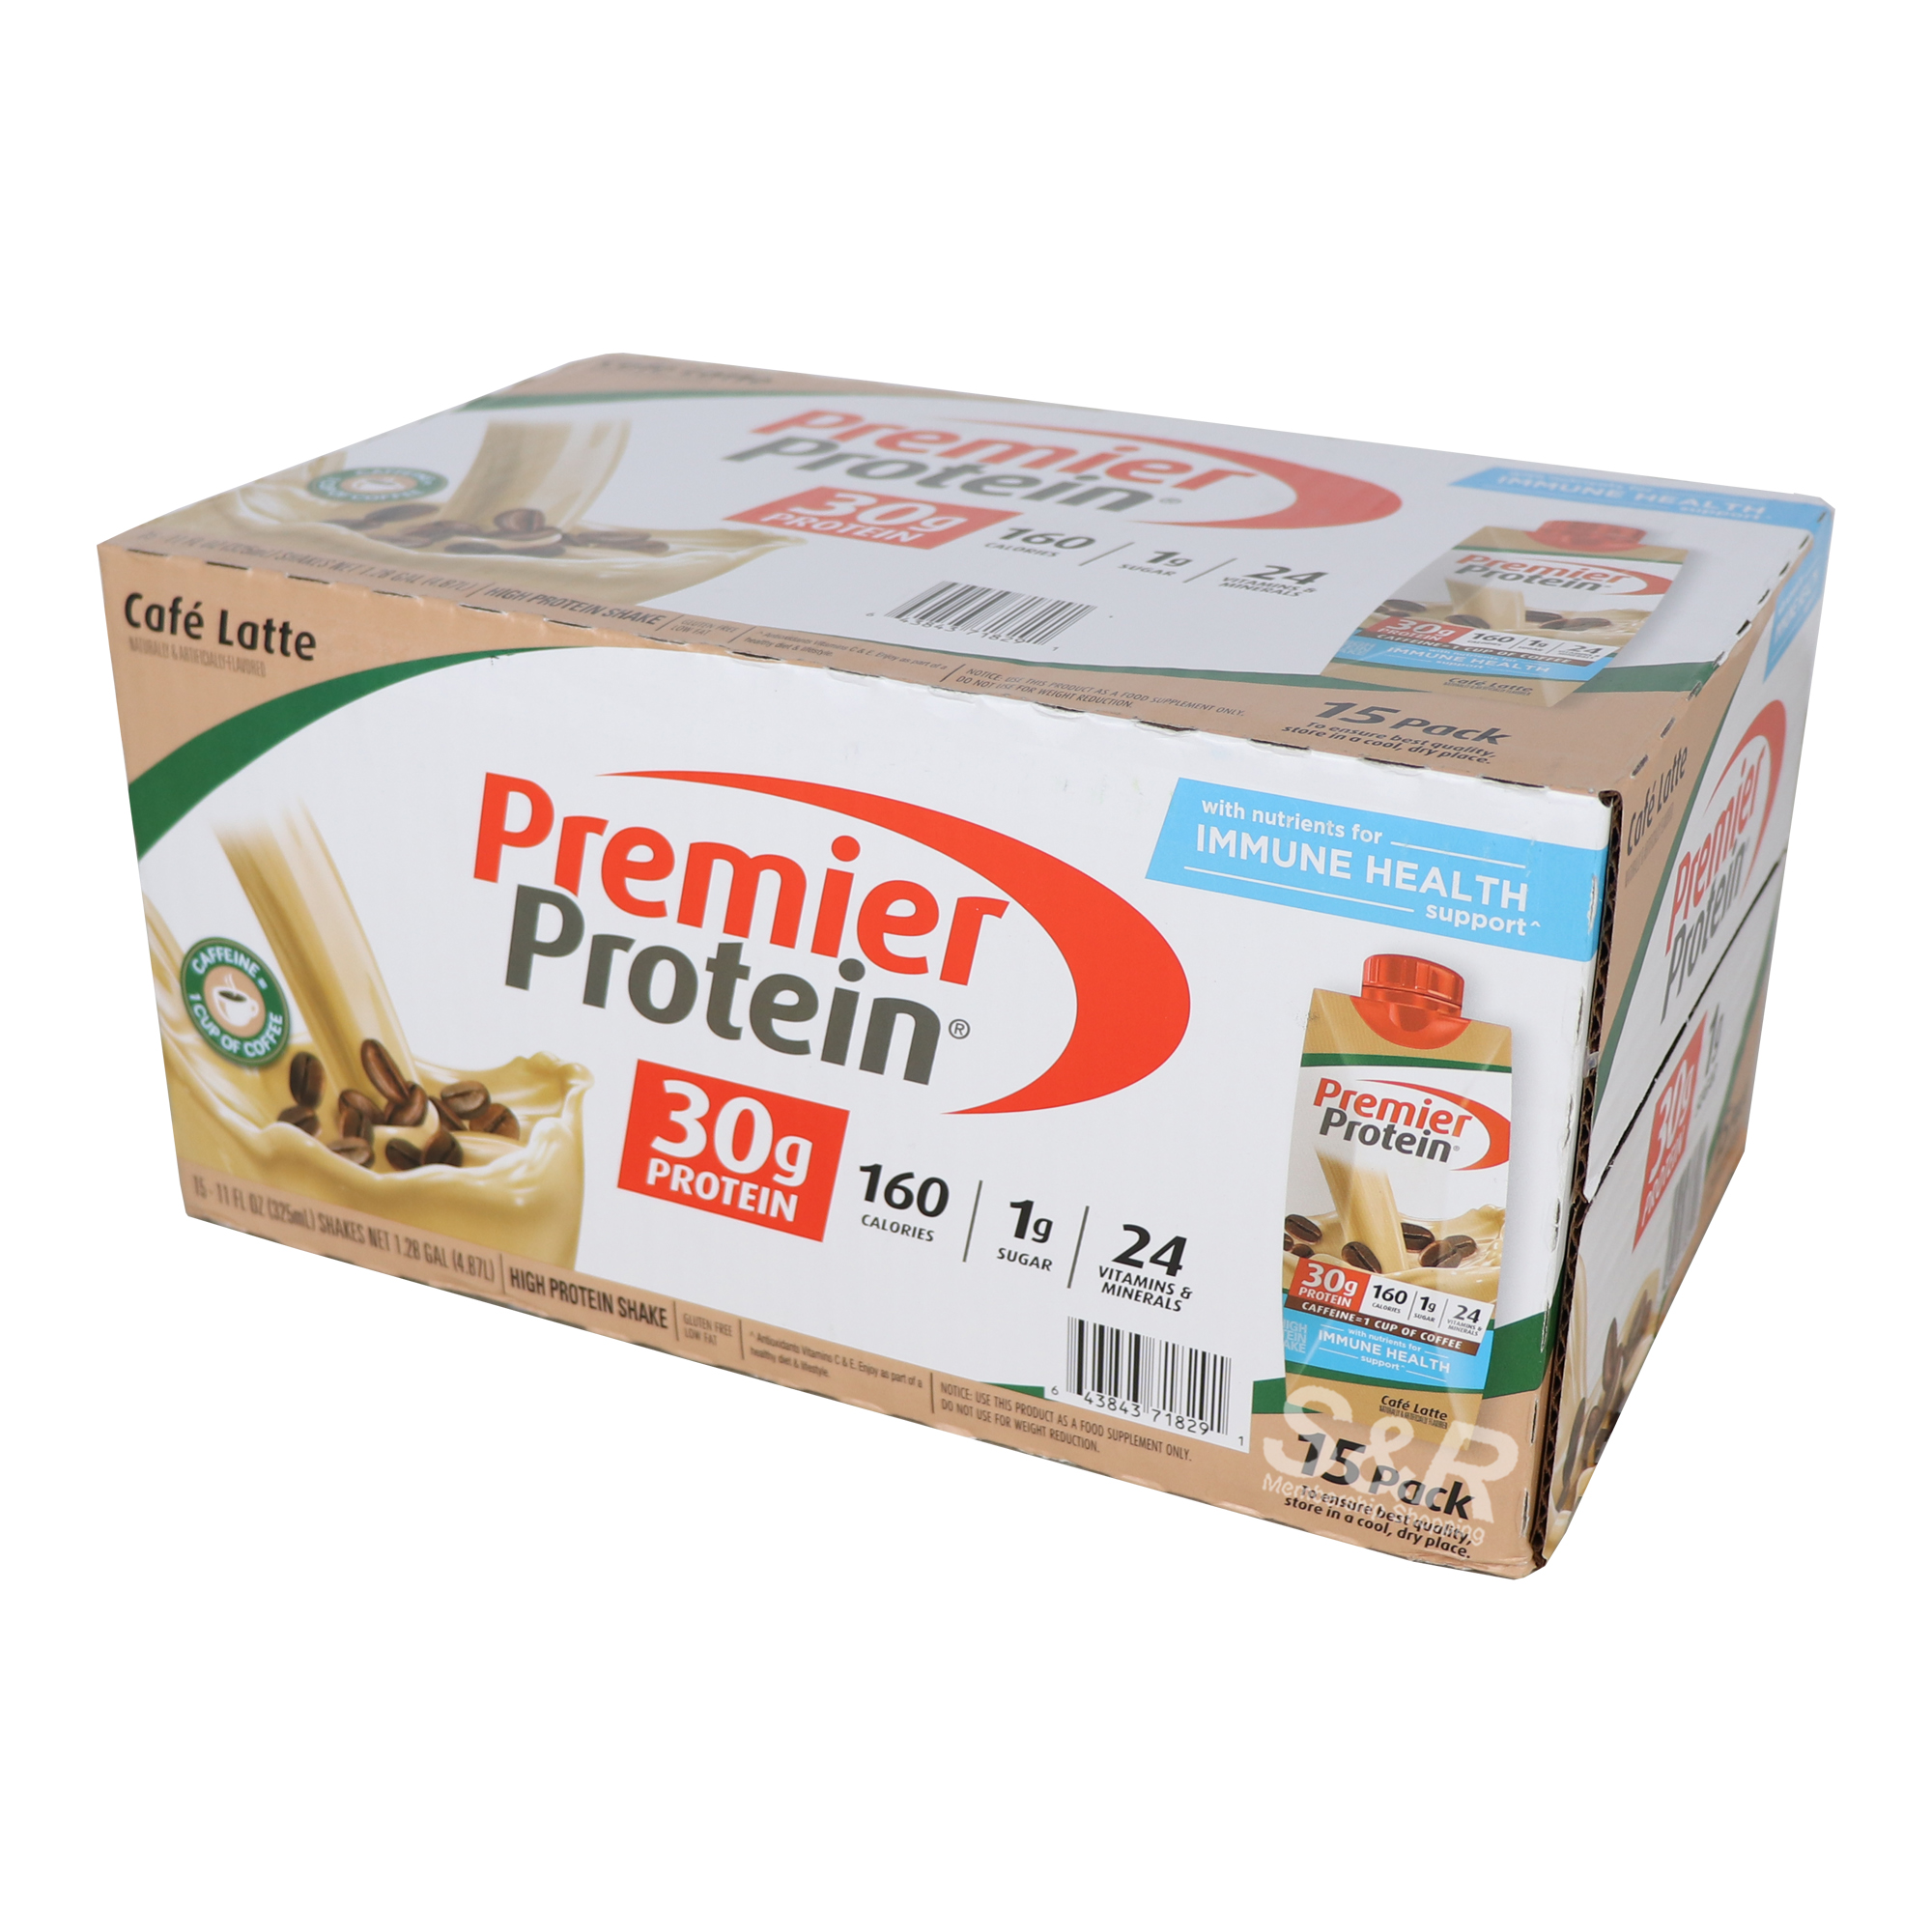 Premier Protein Cafe Latte 15 pcs